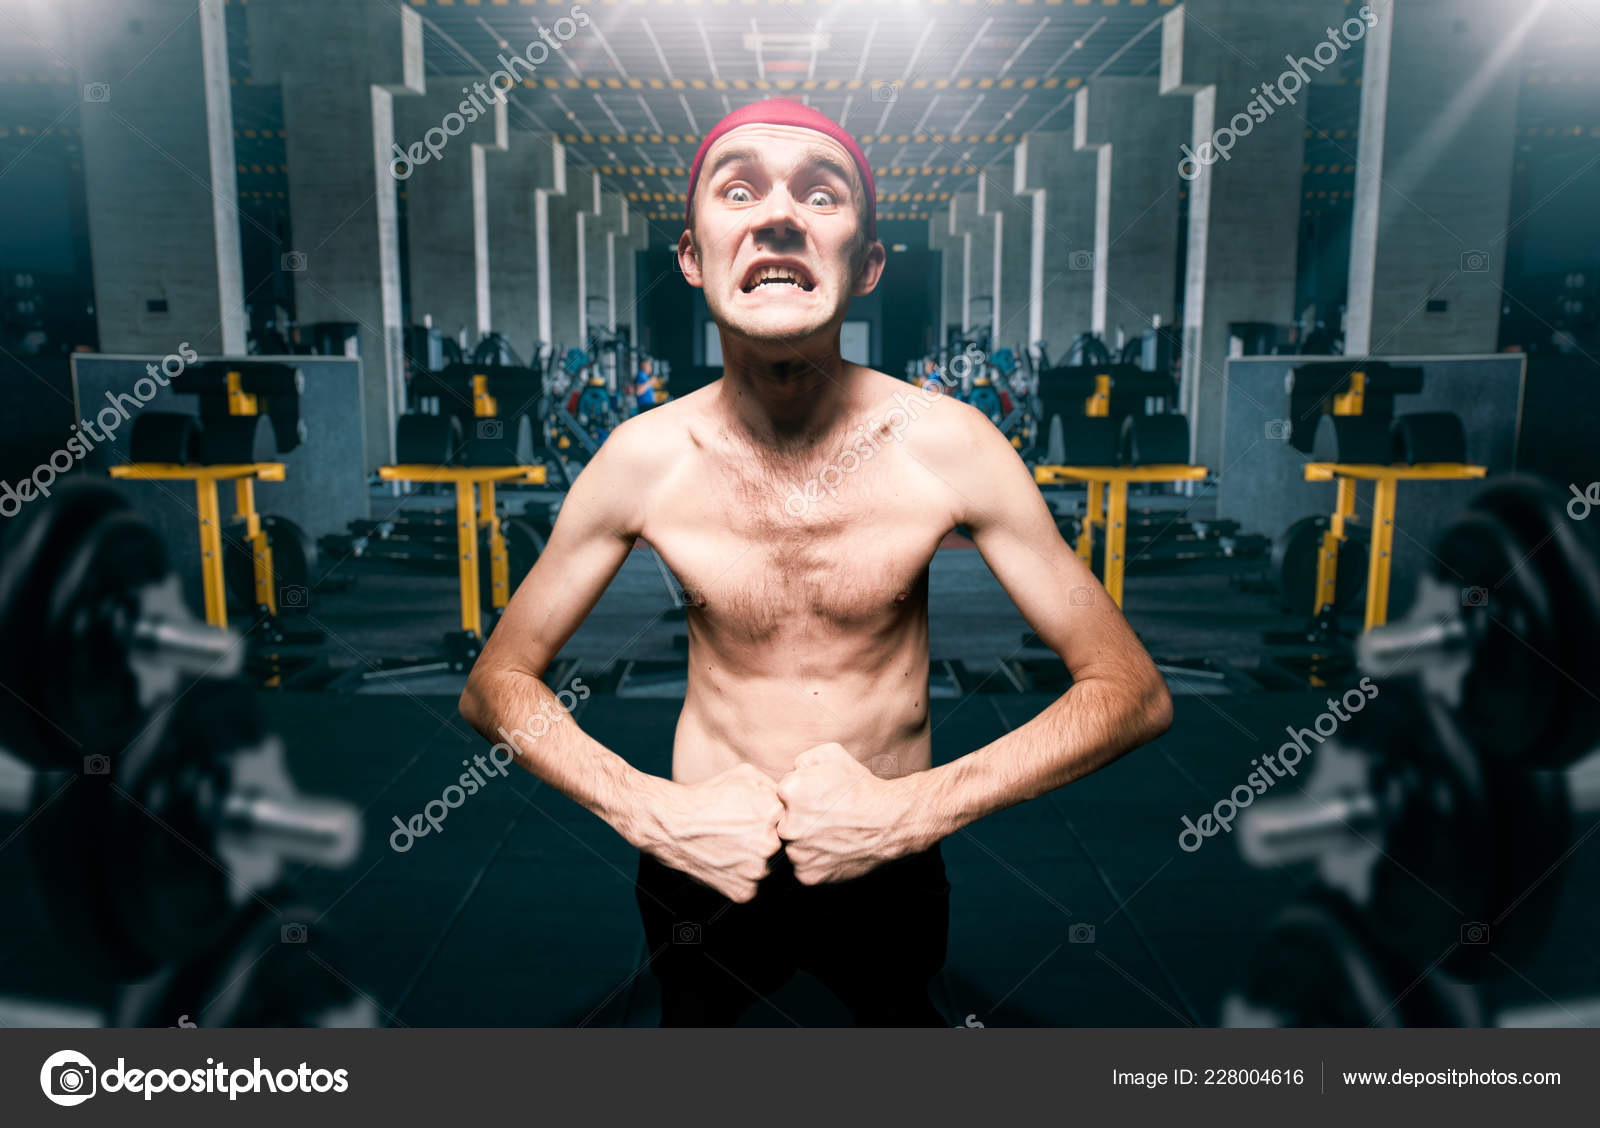 depositphotos_228004616-stock-photo-thin-guy-poses-workout-gym.jpg